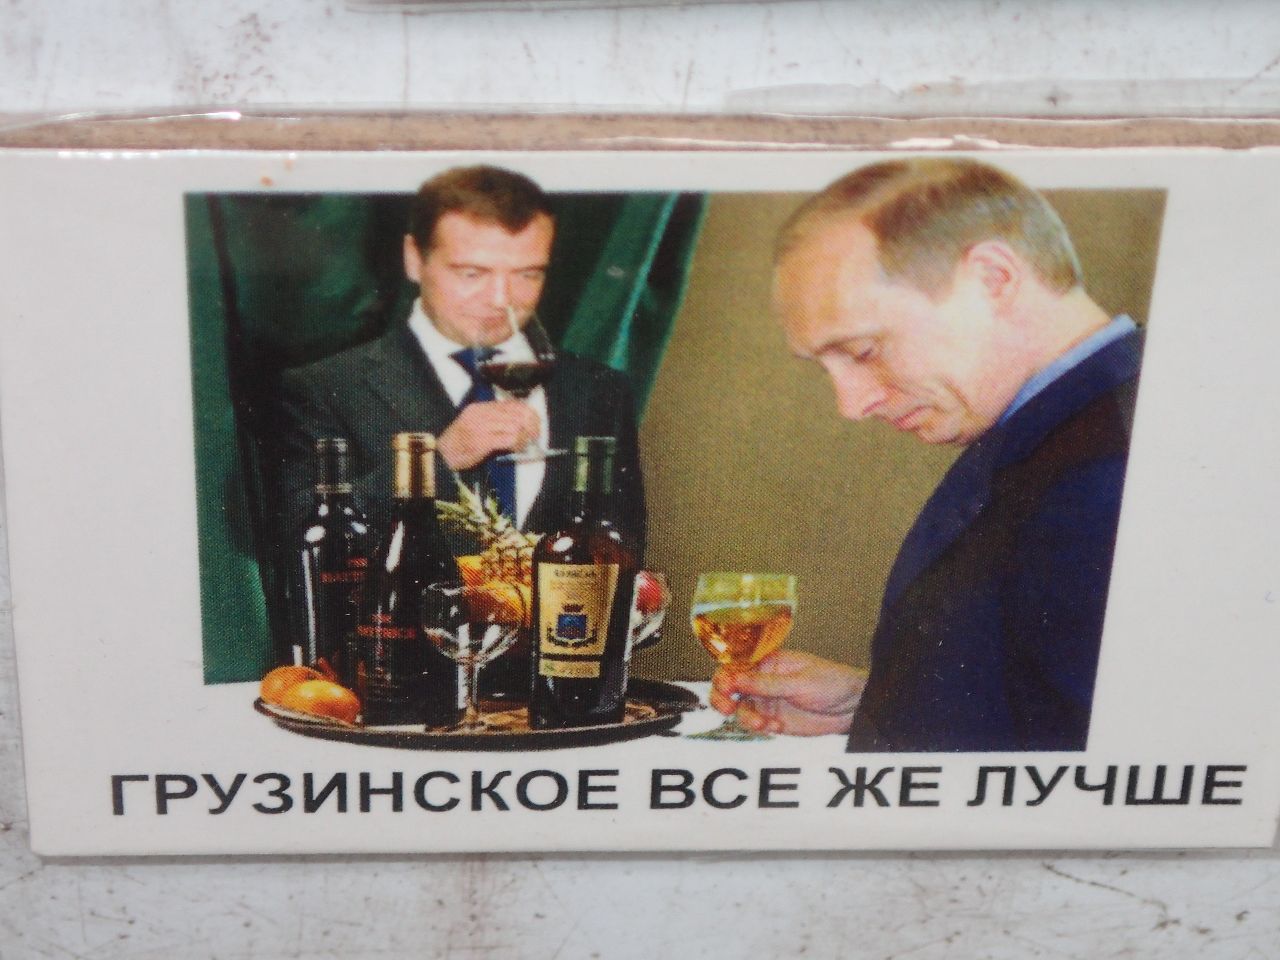 Сказ о том как мой пра-прадед спирт вёз, а капусту не продал Липецк, Россия